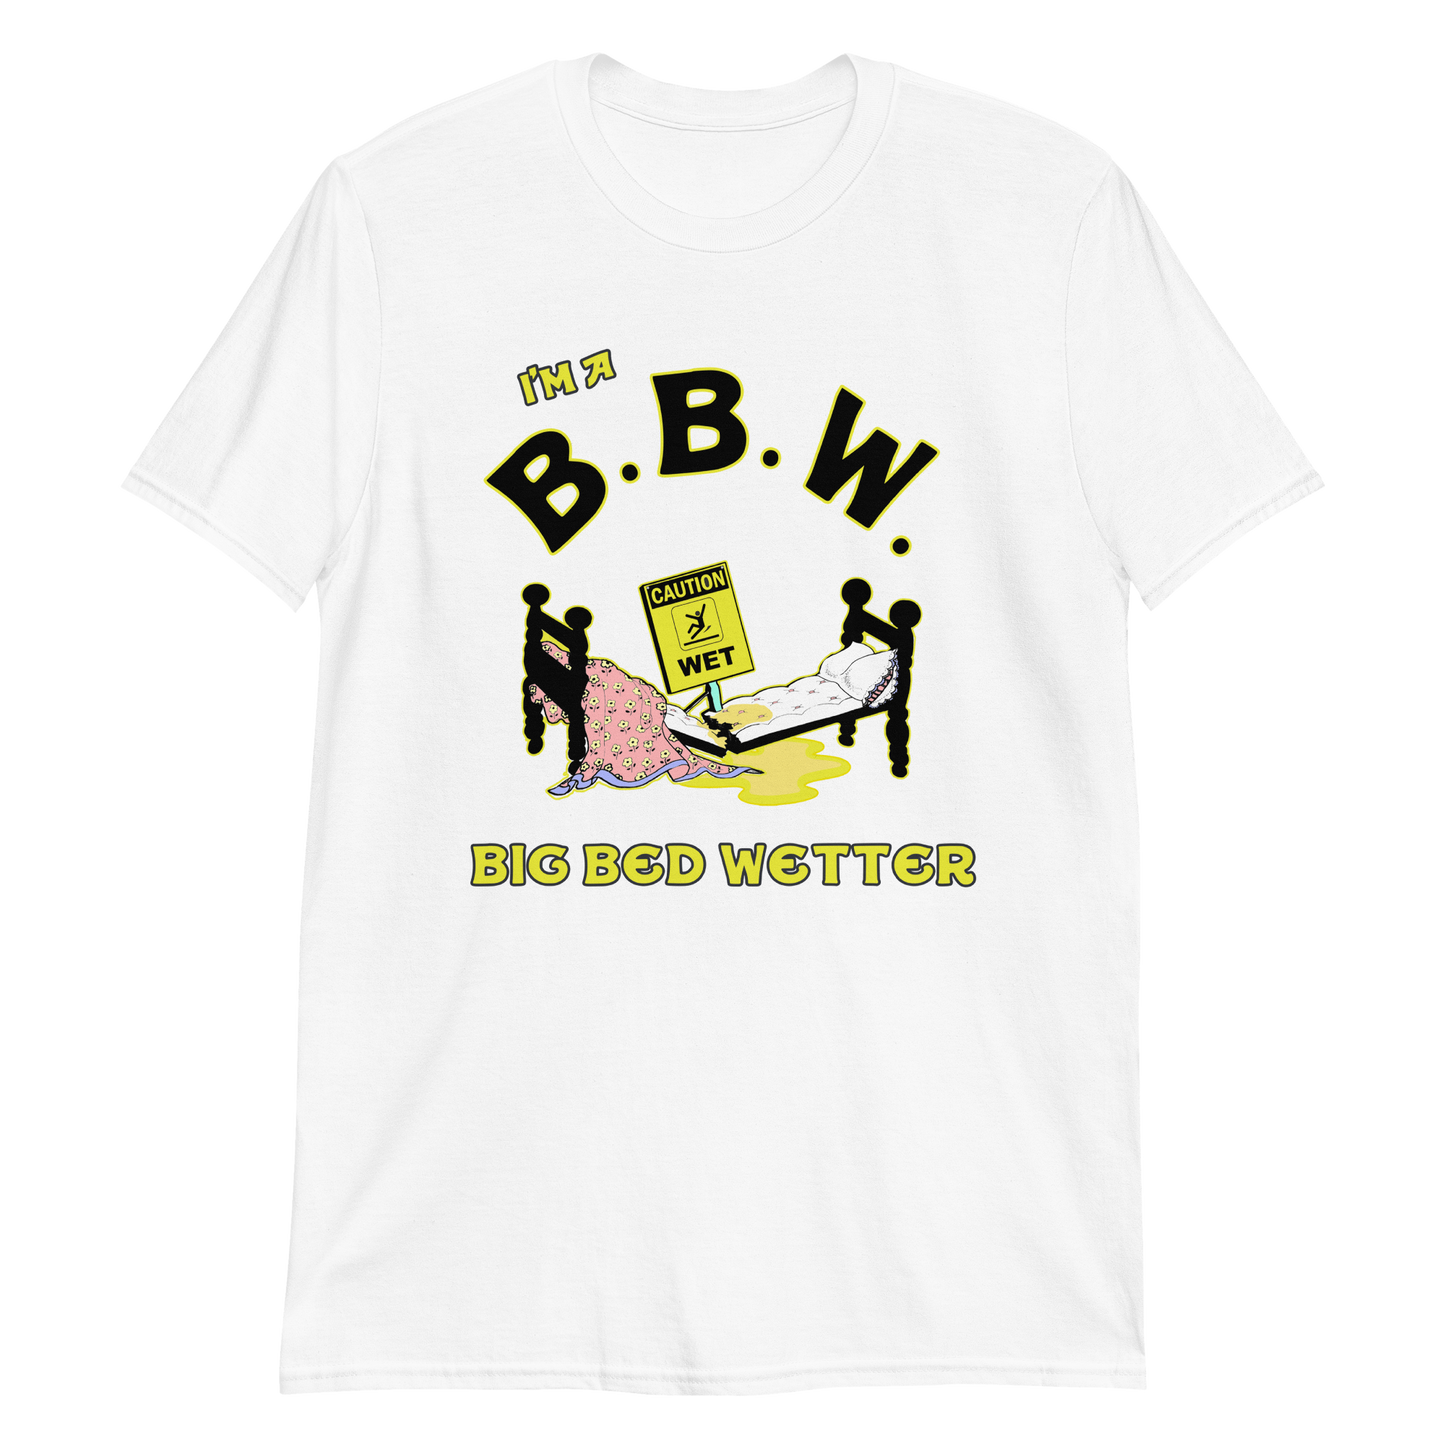 I'm a BBW (big bed wetter).